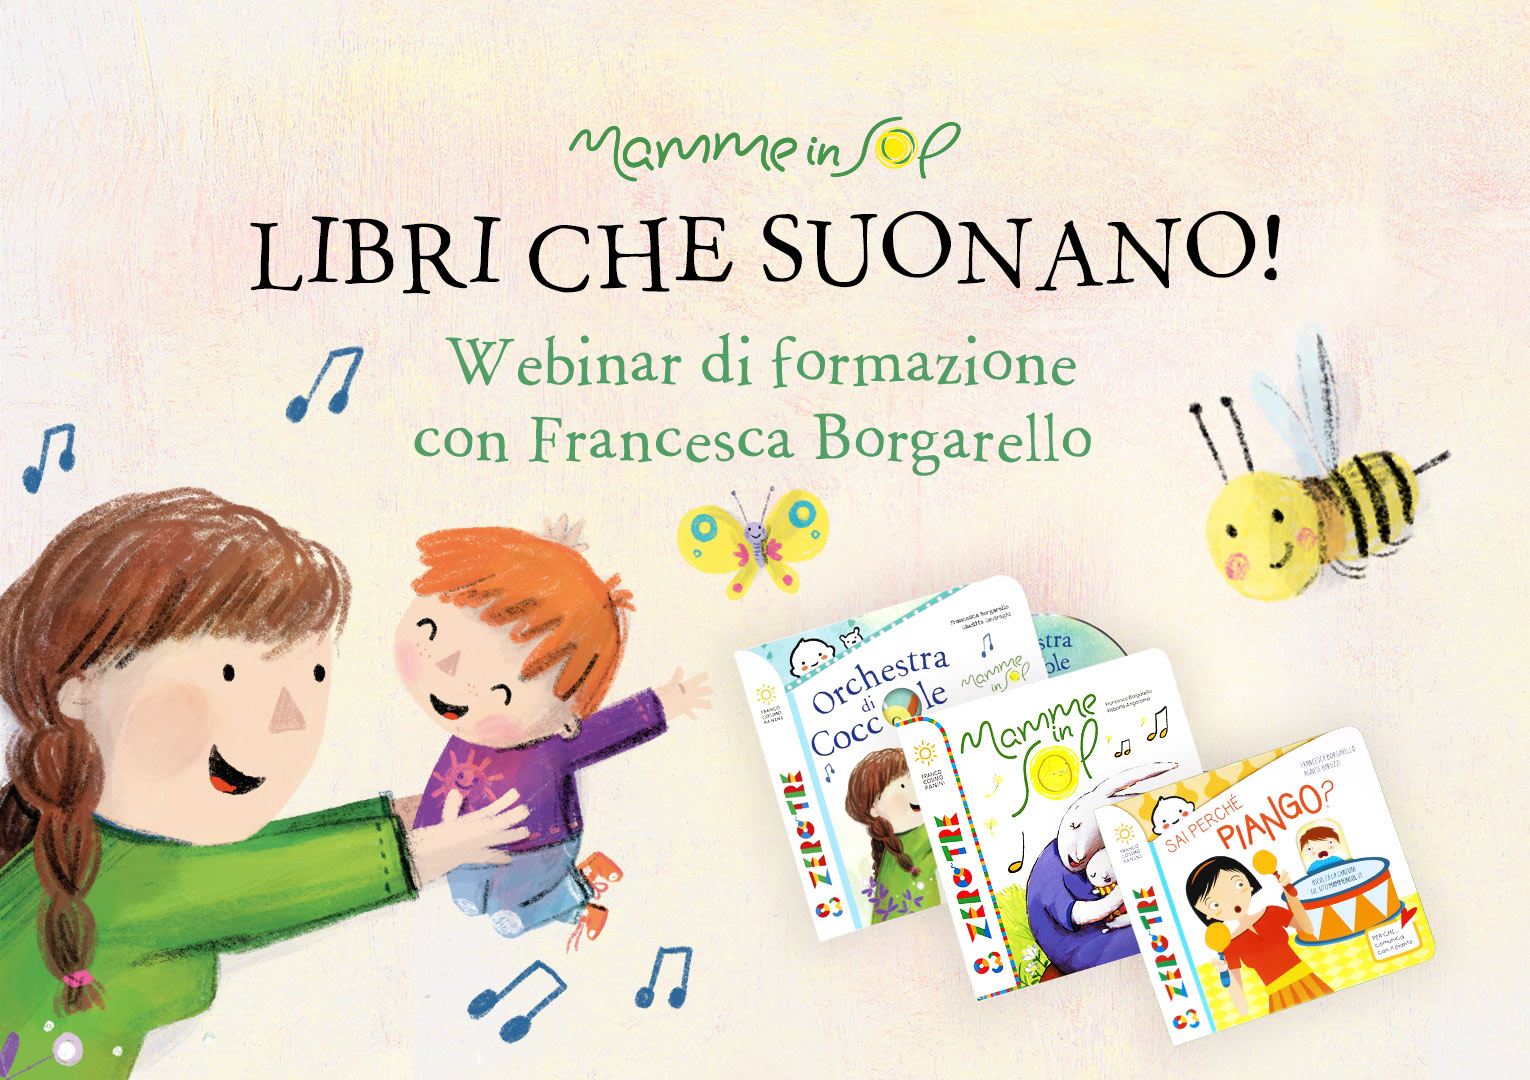 Libri che suonano! Webinar di formazione con Francesca Borgarello